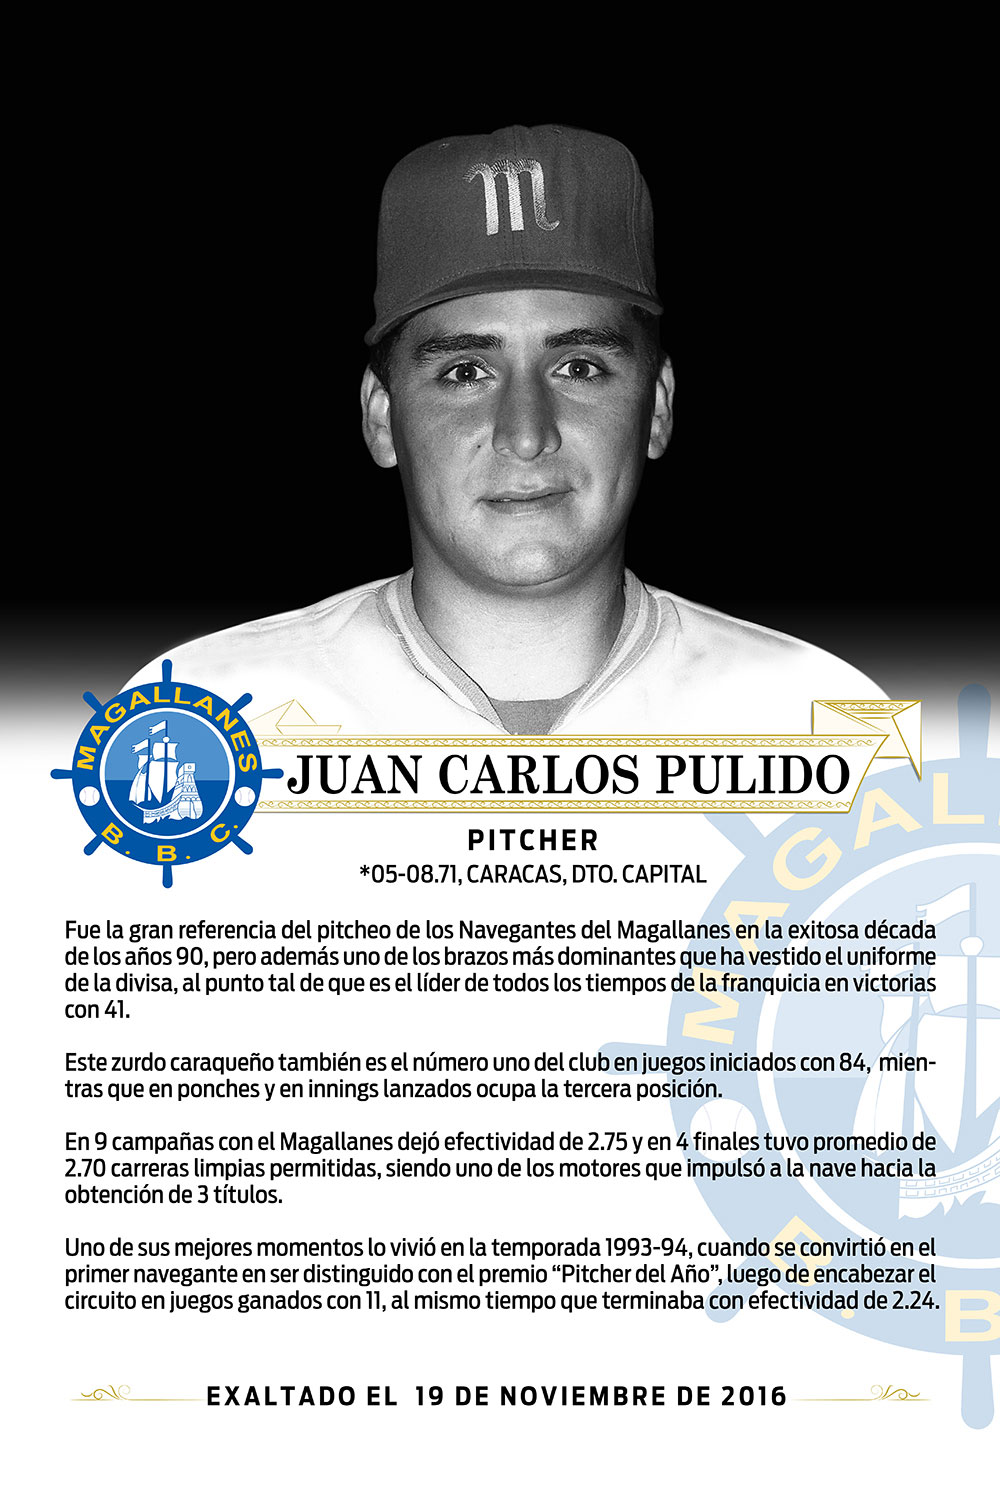 Juan Carlos Pulido